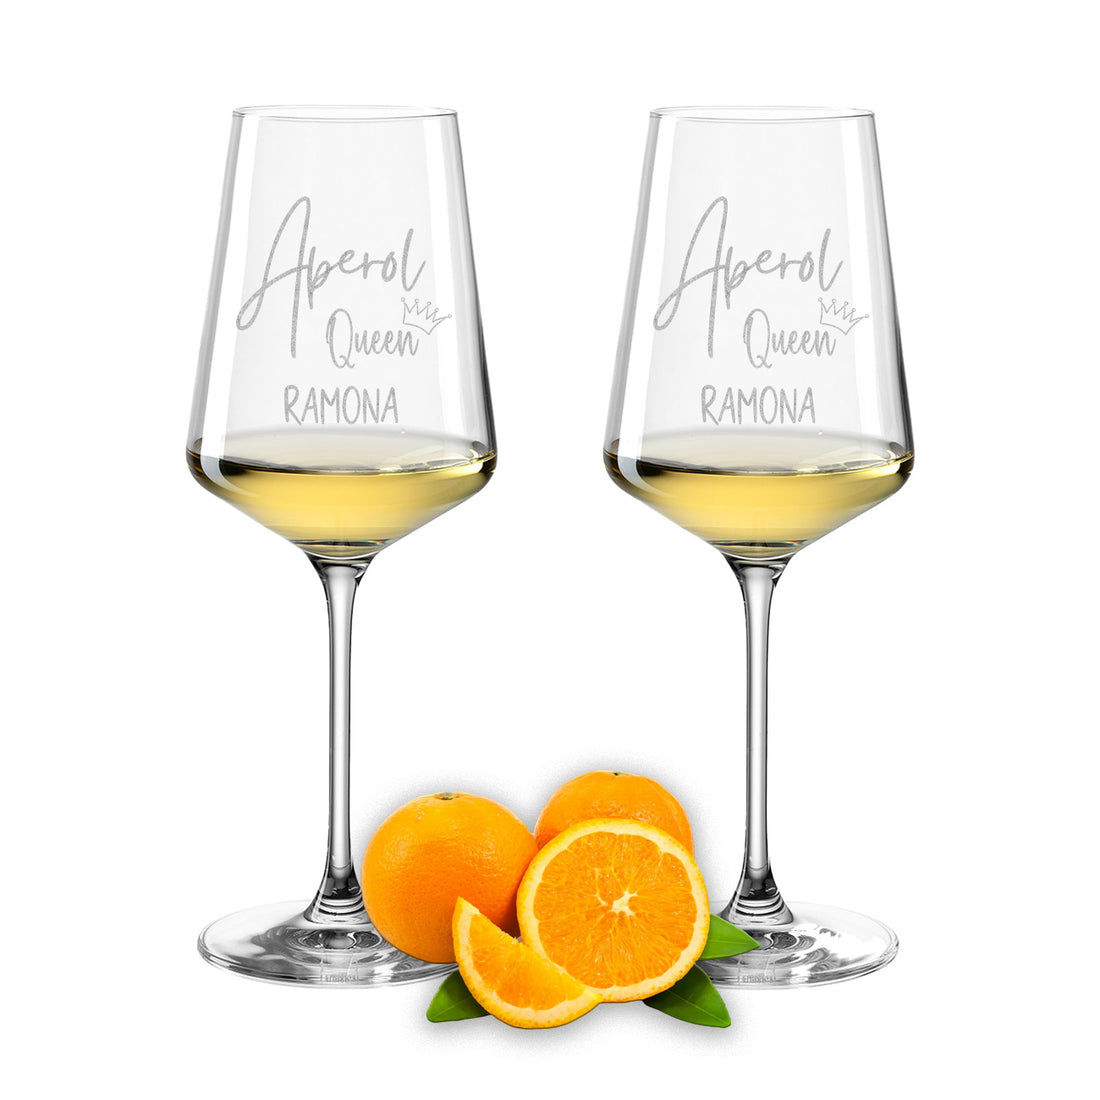 Weinglas mit Gravur Leonardo Puccini "APEROL QUEEN" 2 Gläser mit Wunschname